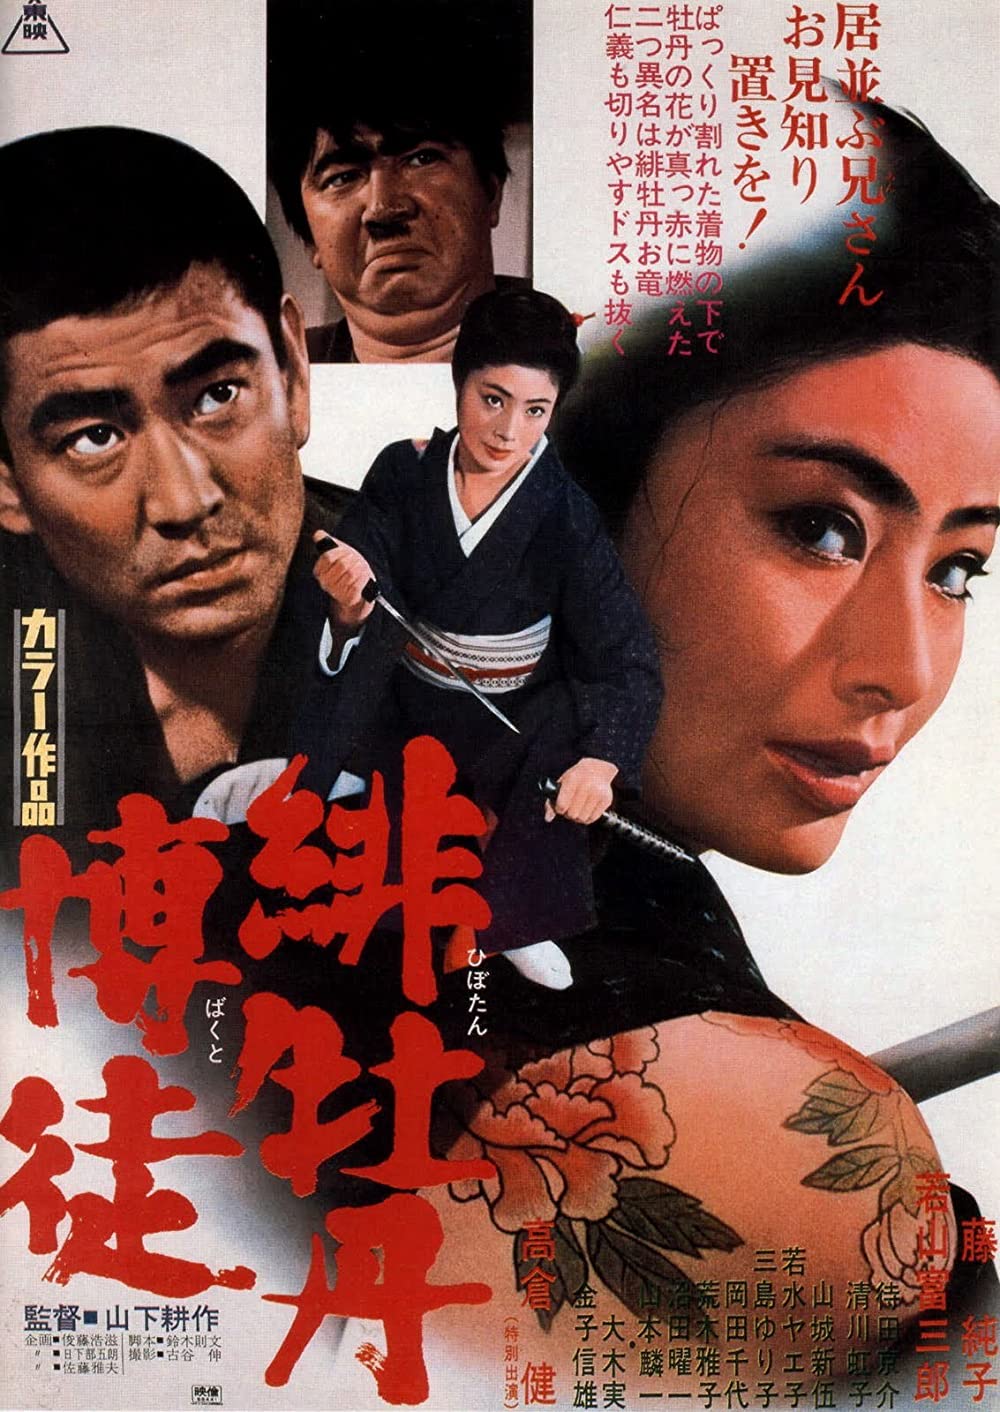 Hibotan bakuto (1968)